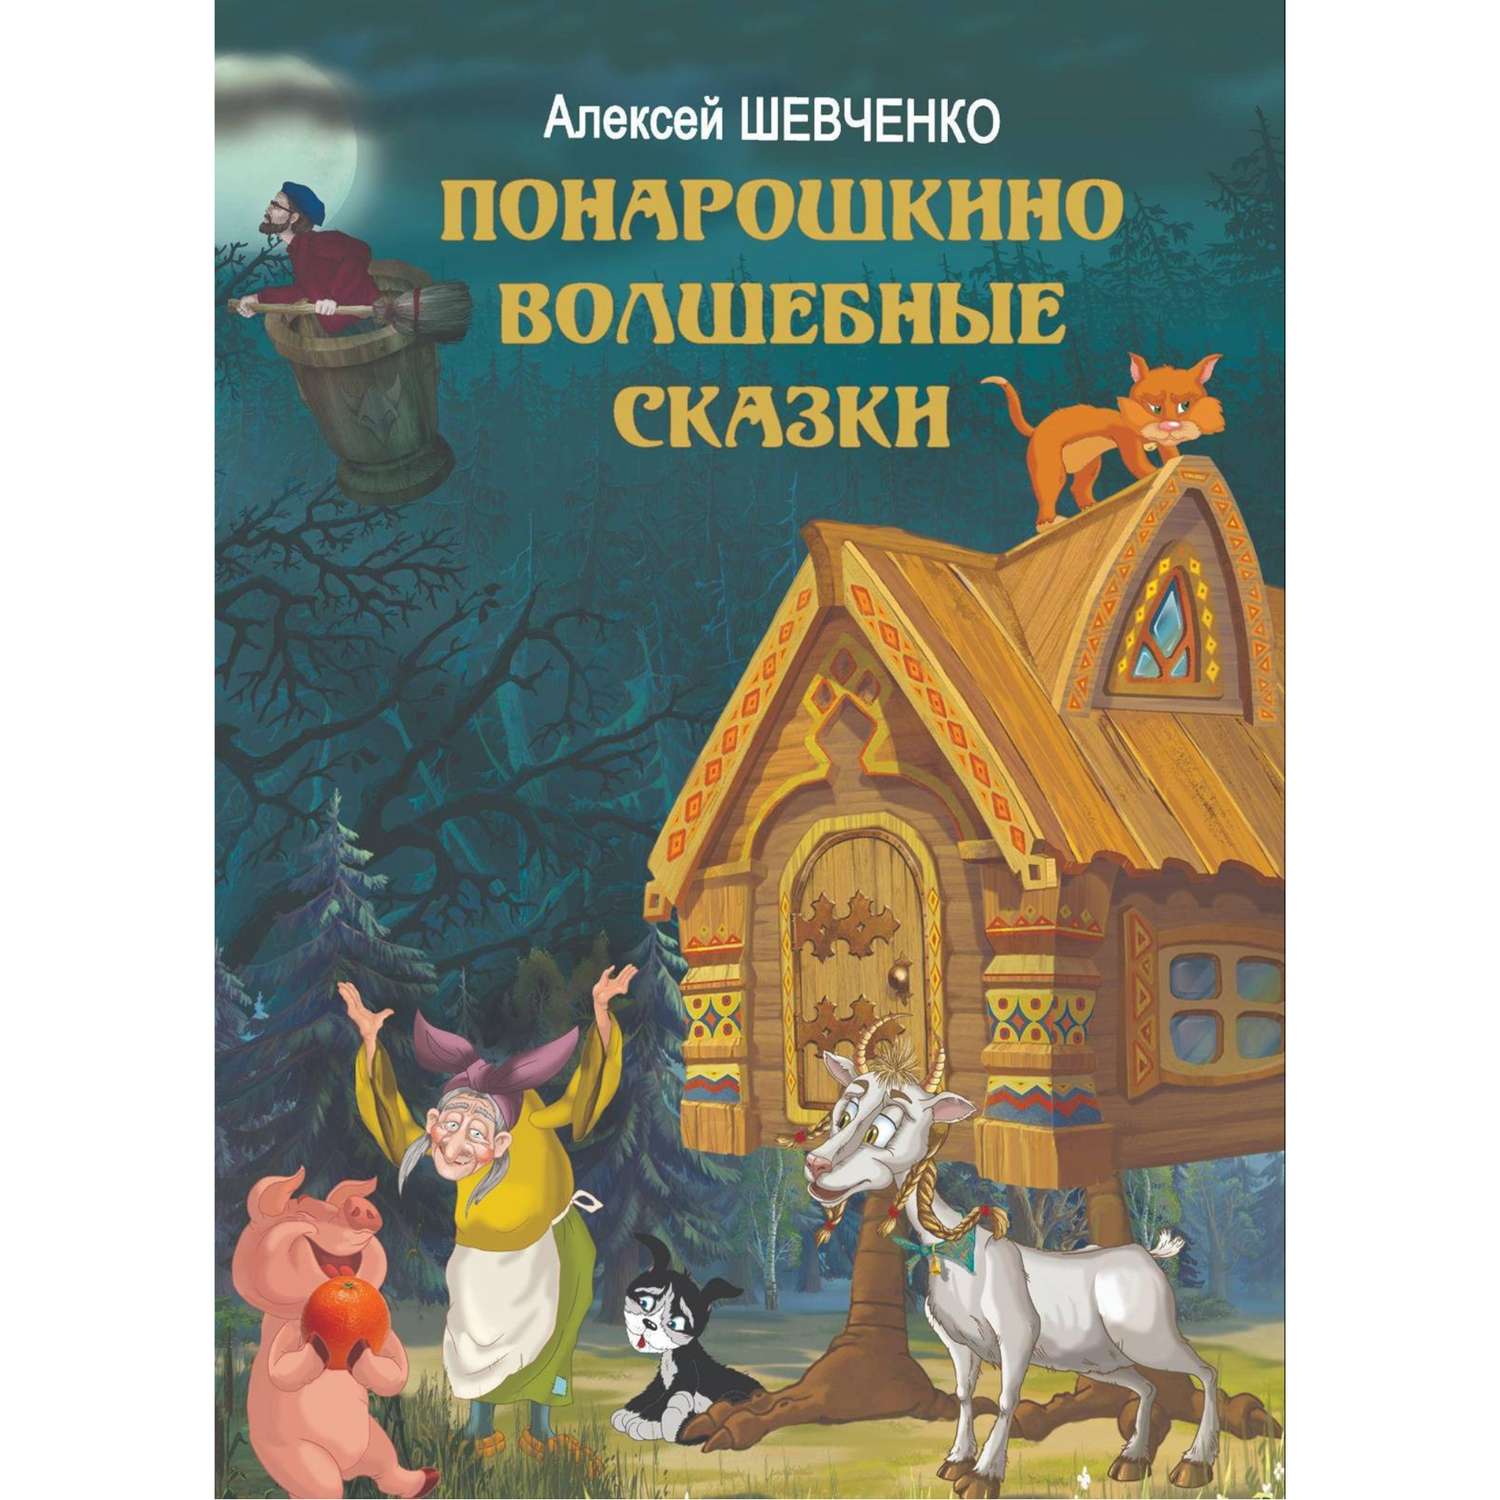 Книга Лада Понарошкино. Волшебные сказки - фото 1